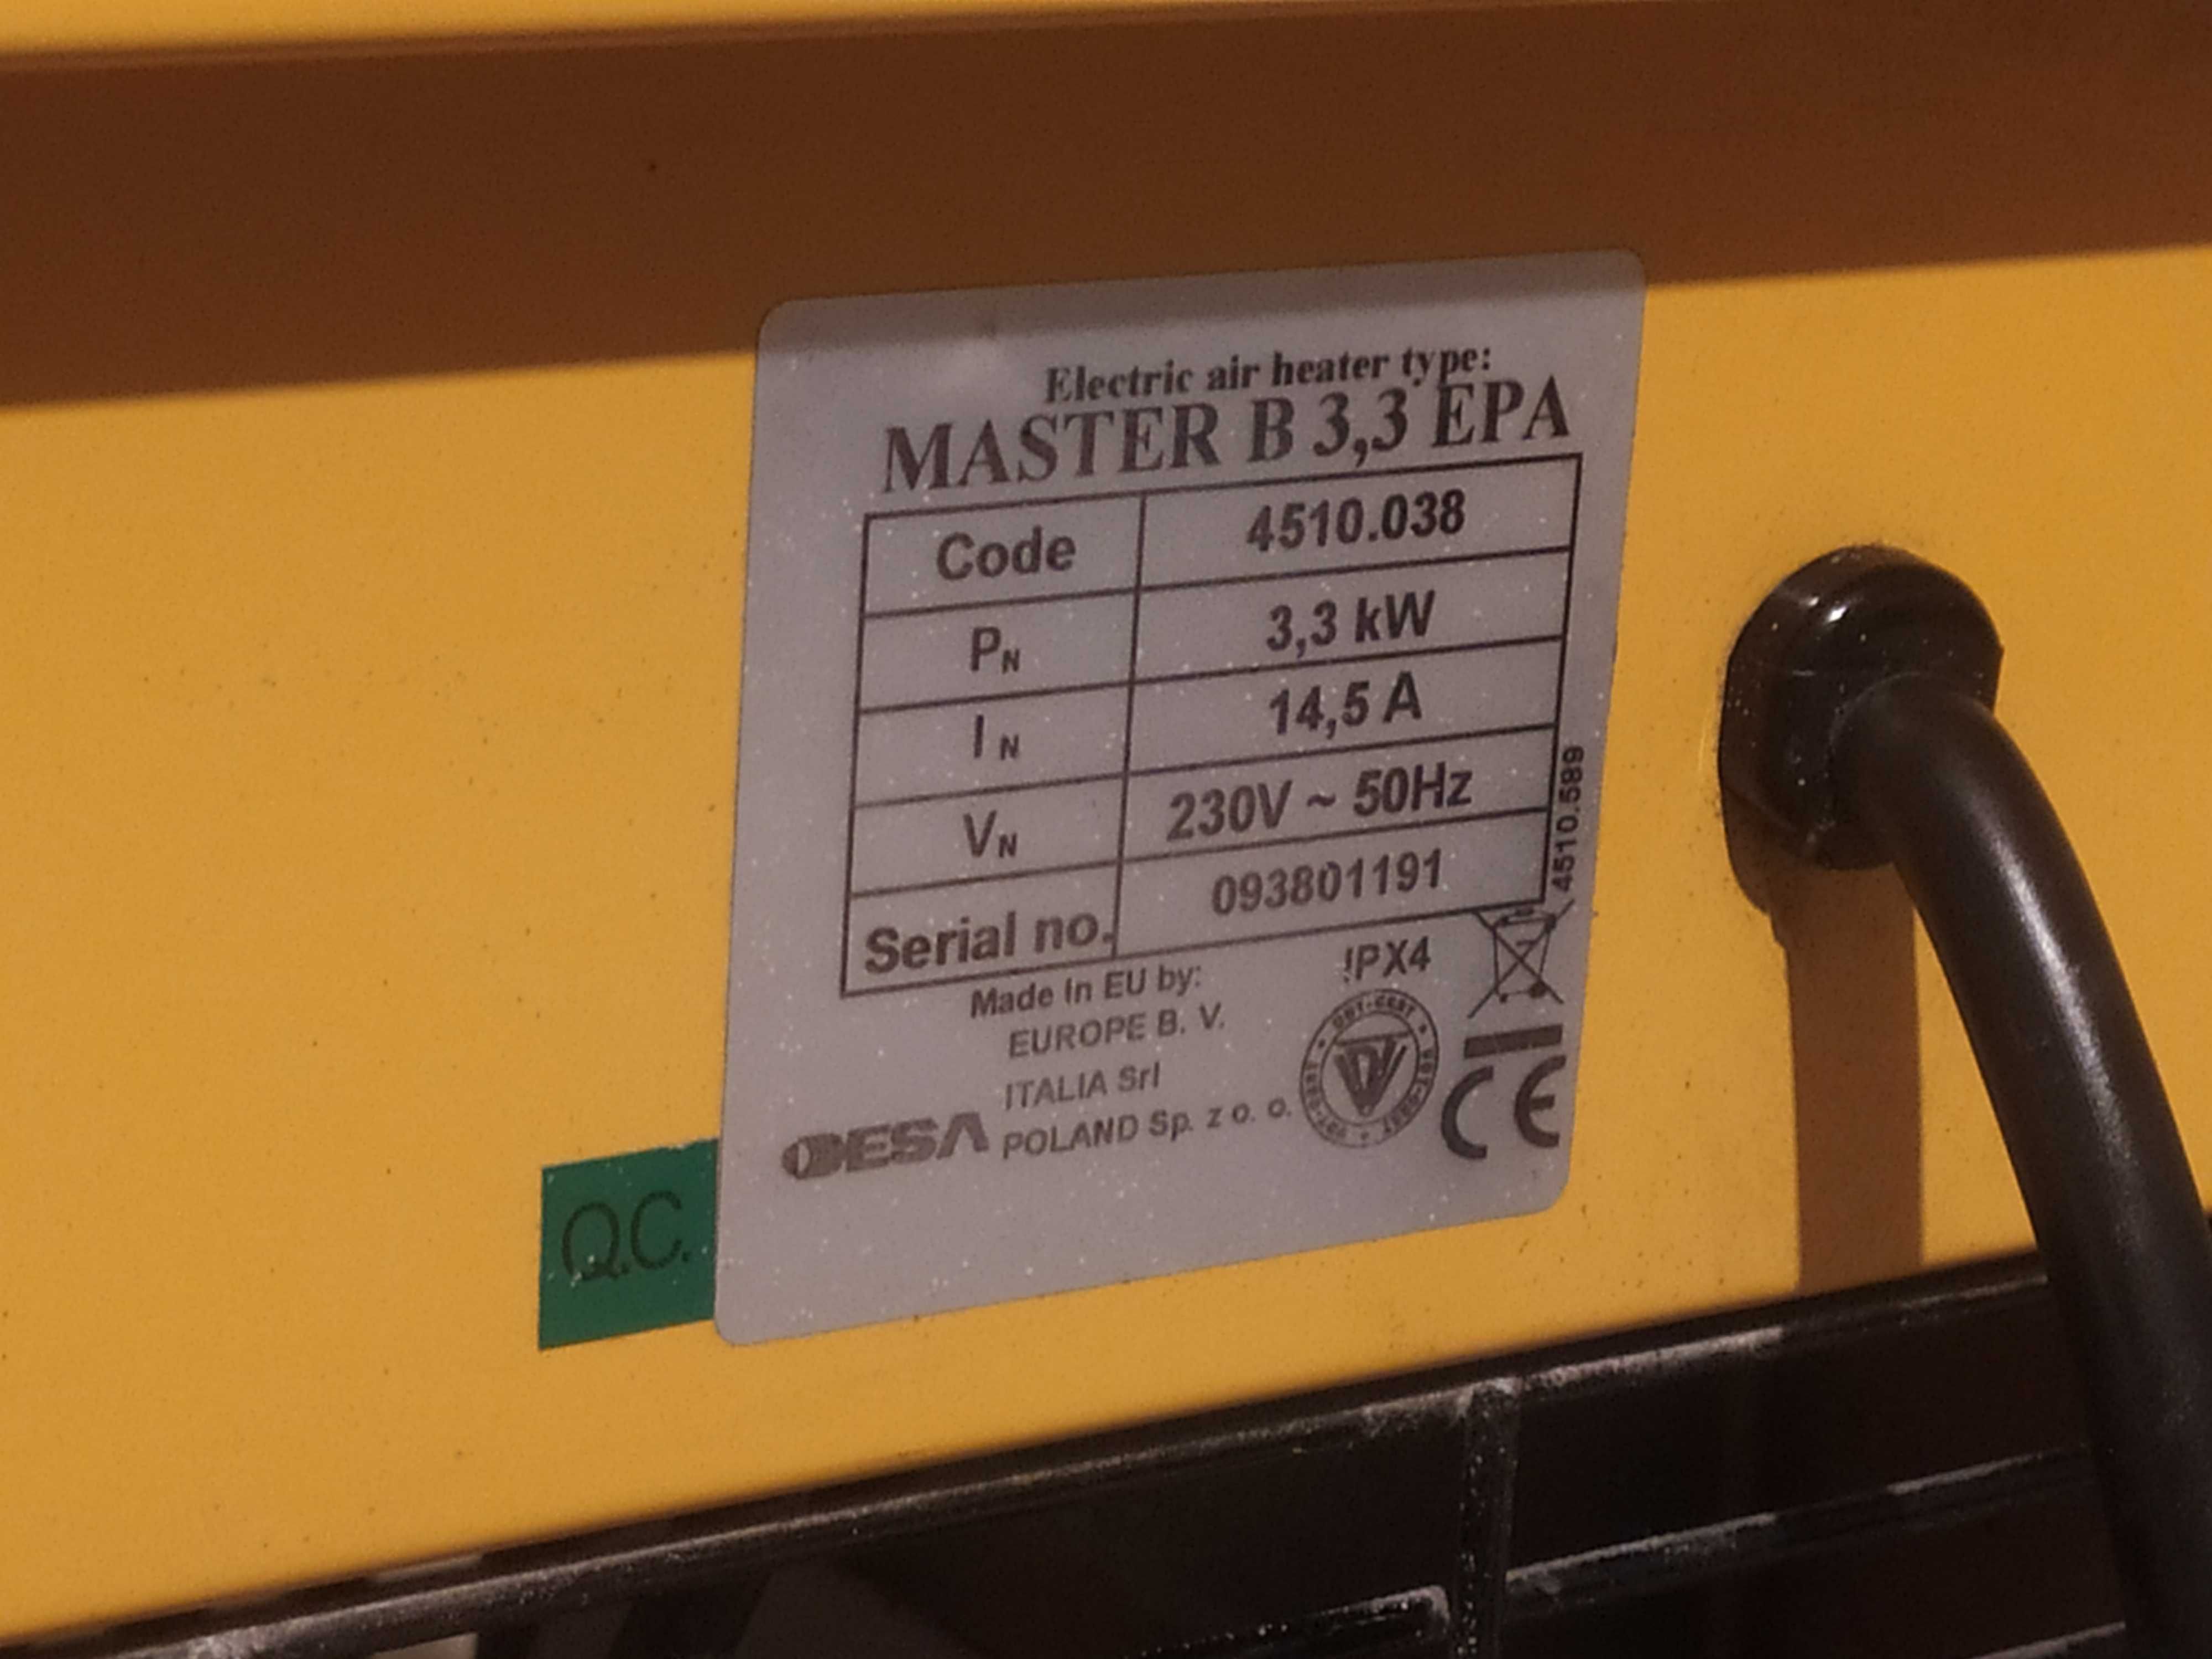 Nagrzewnica Master B 3,3 EPA o mocy 3,3 kw